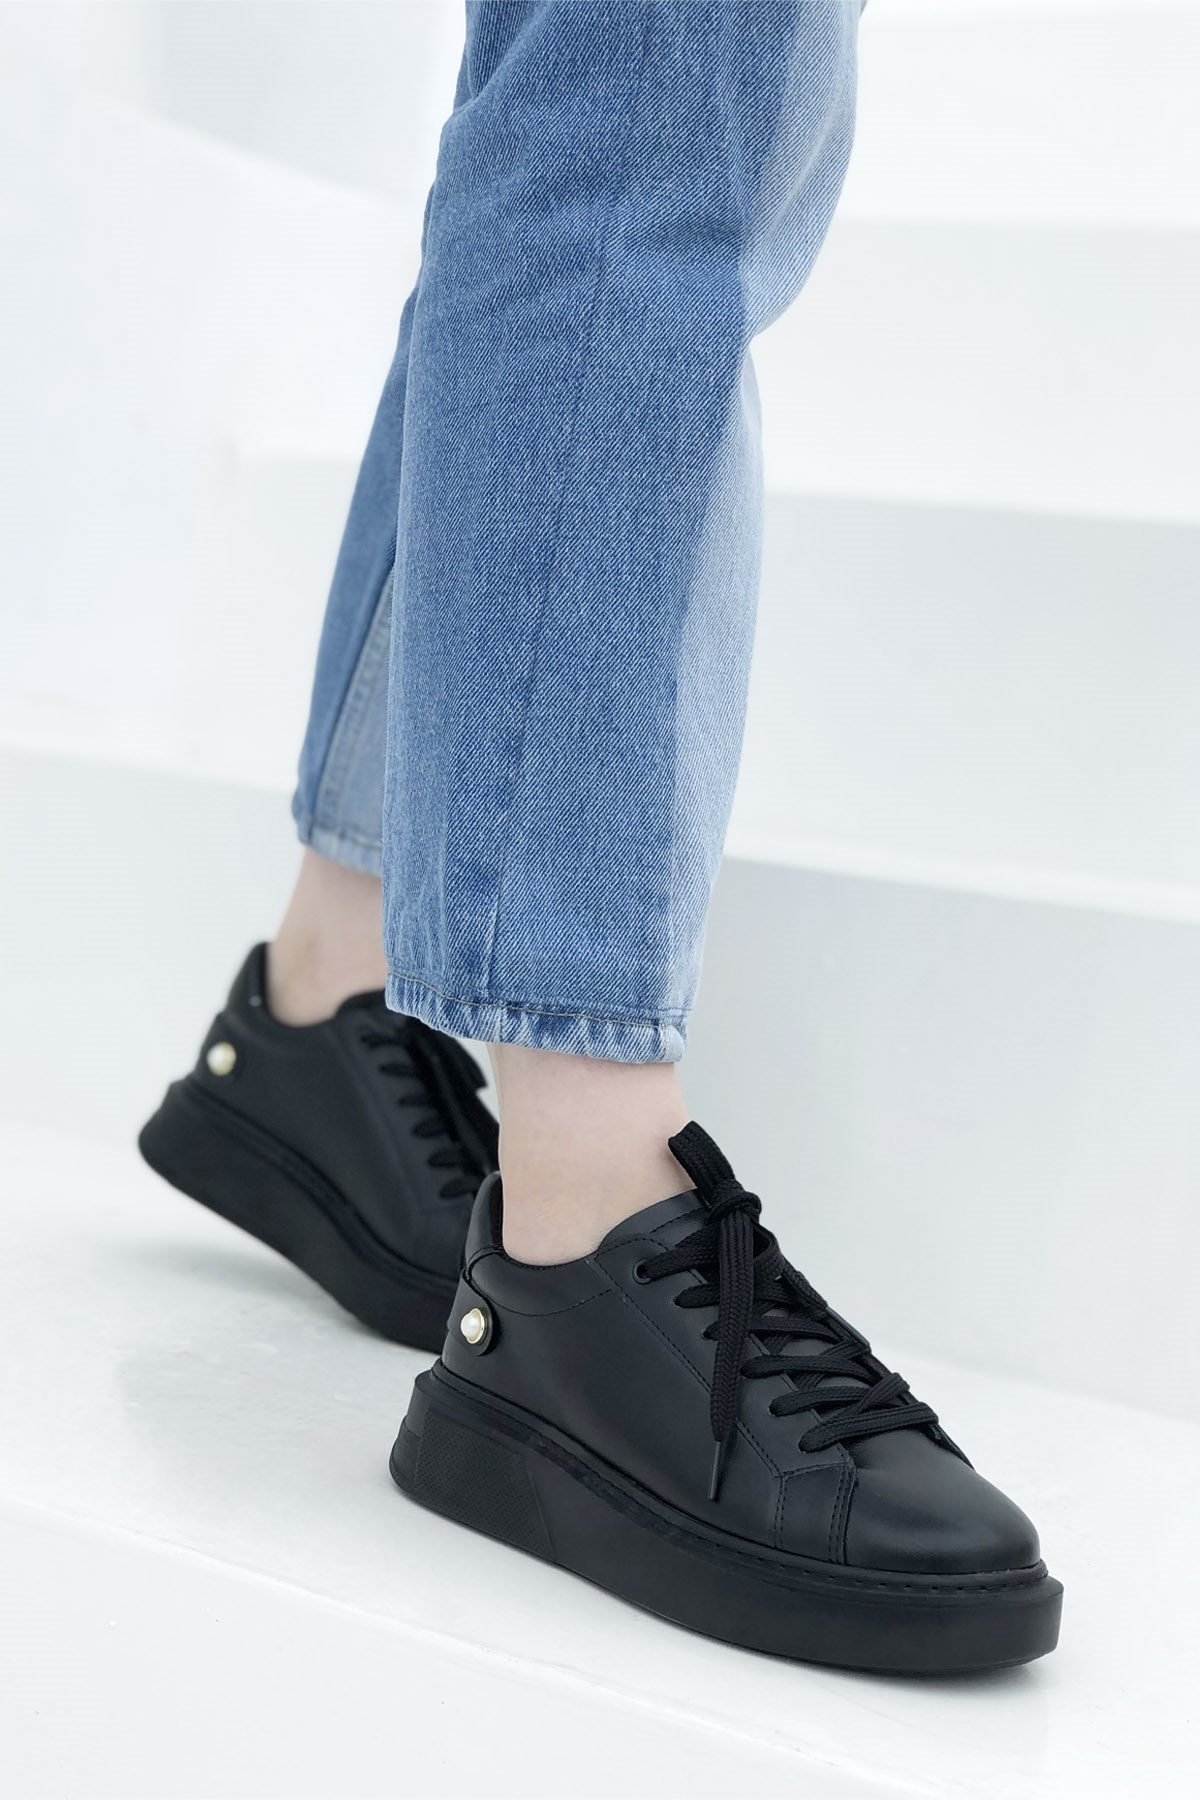 Kalın Tababn Bağcıklı Kadın Spor Ayakkabı Siyah RSL-2134 | My Bella Shoes